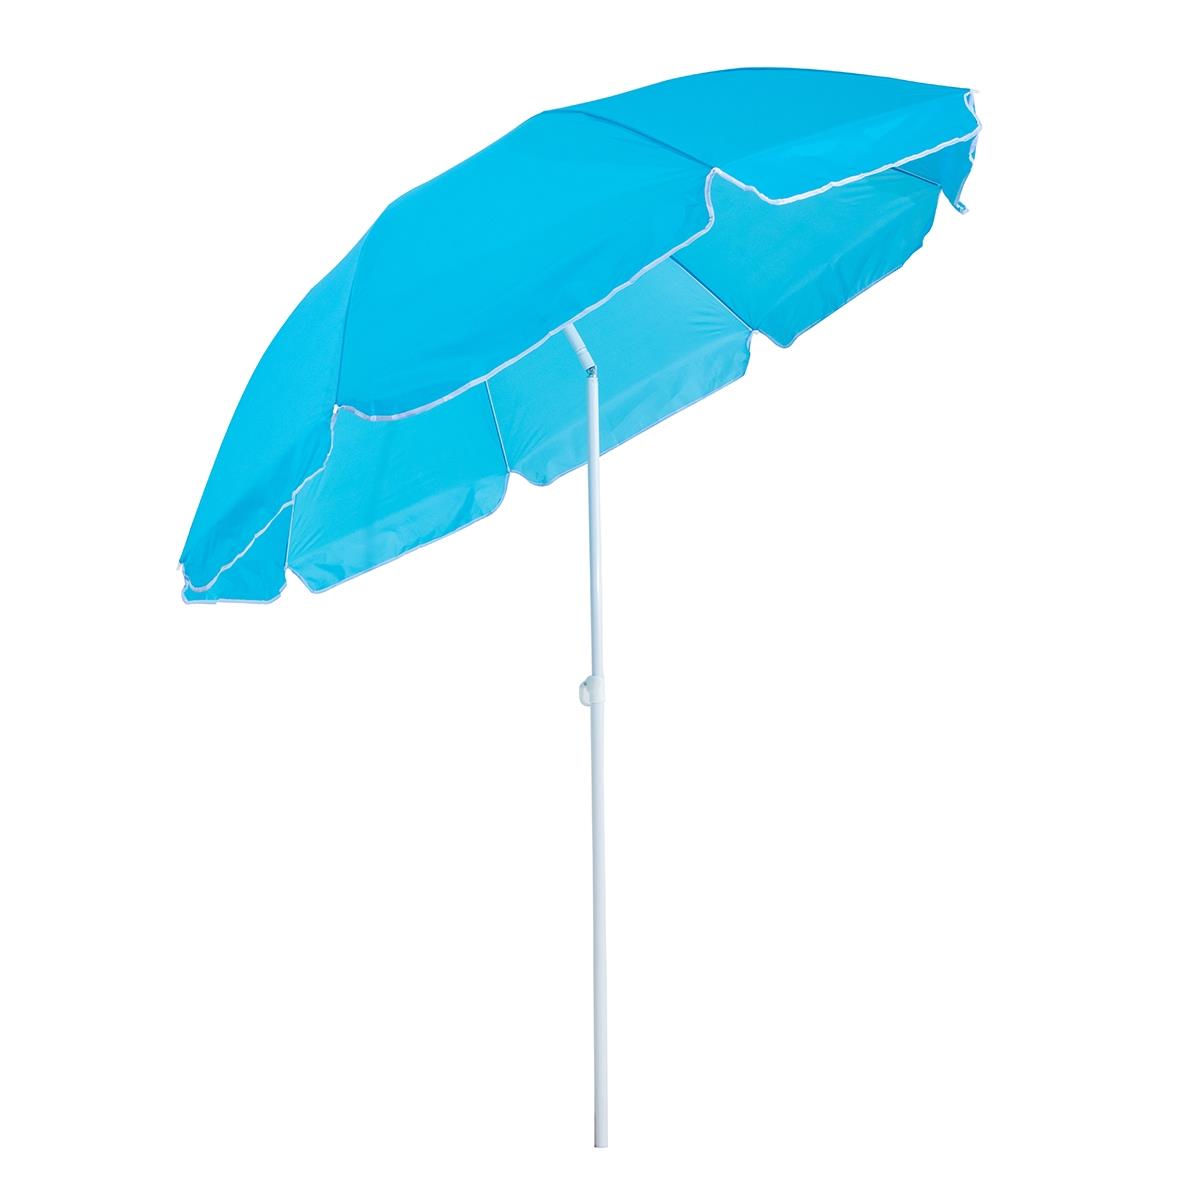 Зонт пляжный d 2,00м с наклоном голубой (22/25/170Т) NA-200N-B Nisus зонт пляжный d 1 8м с наклоном арбуз 19 22 170т na bu1907 180 w nisus